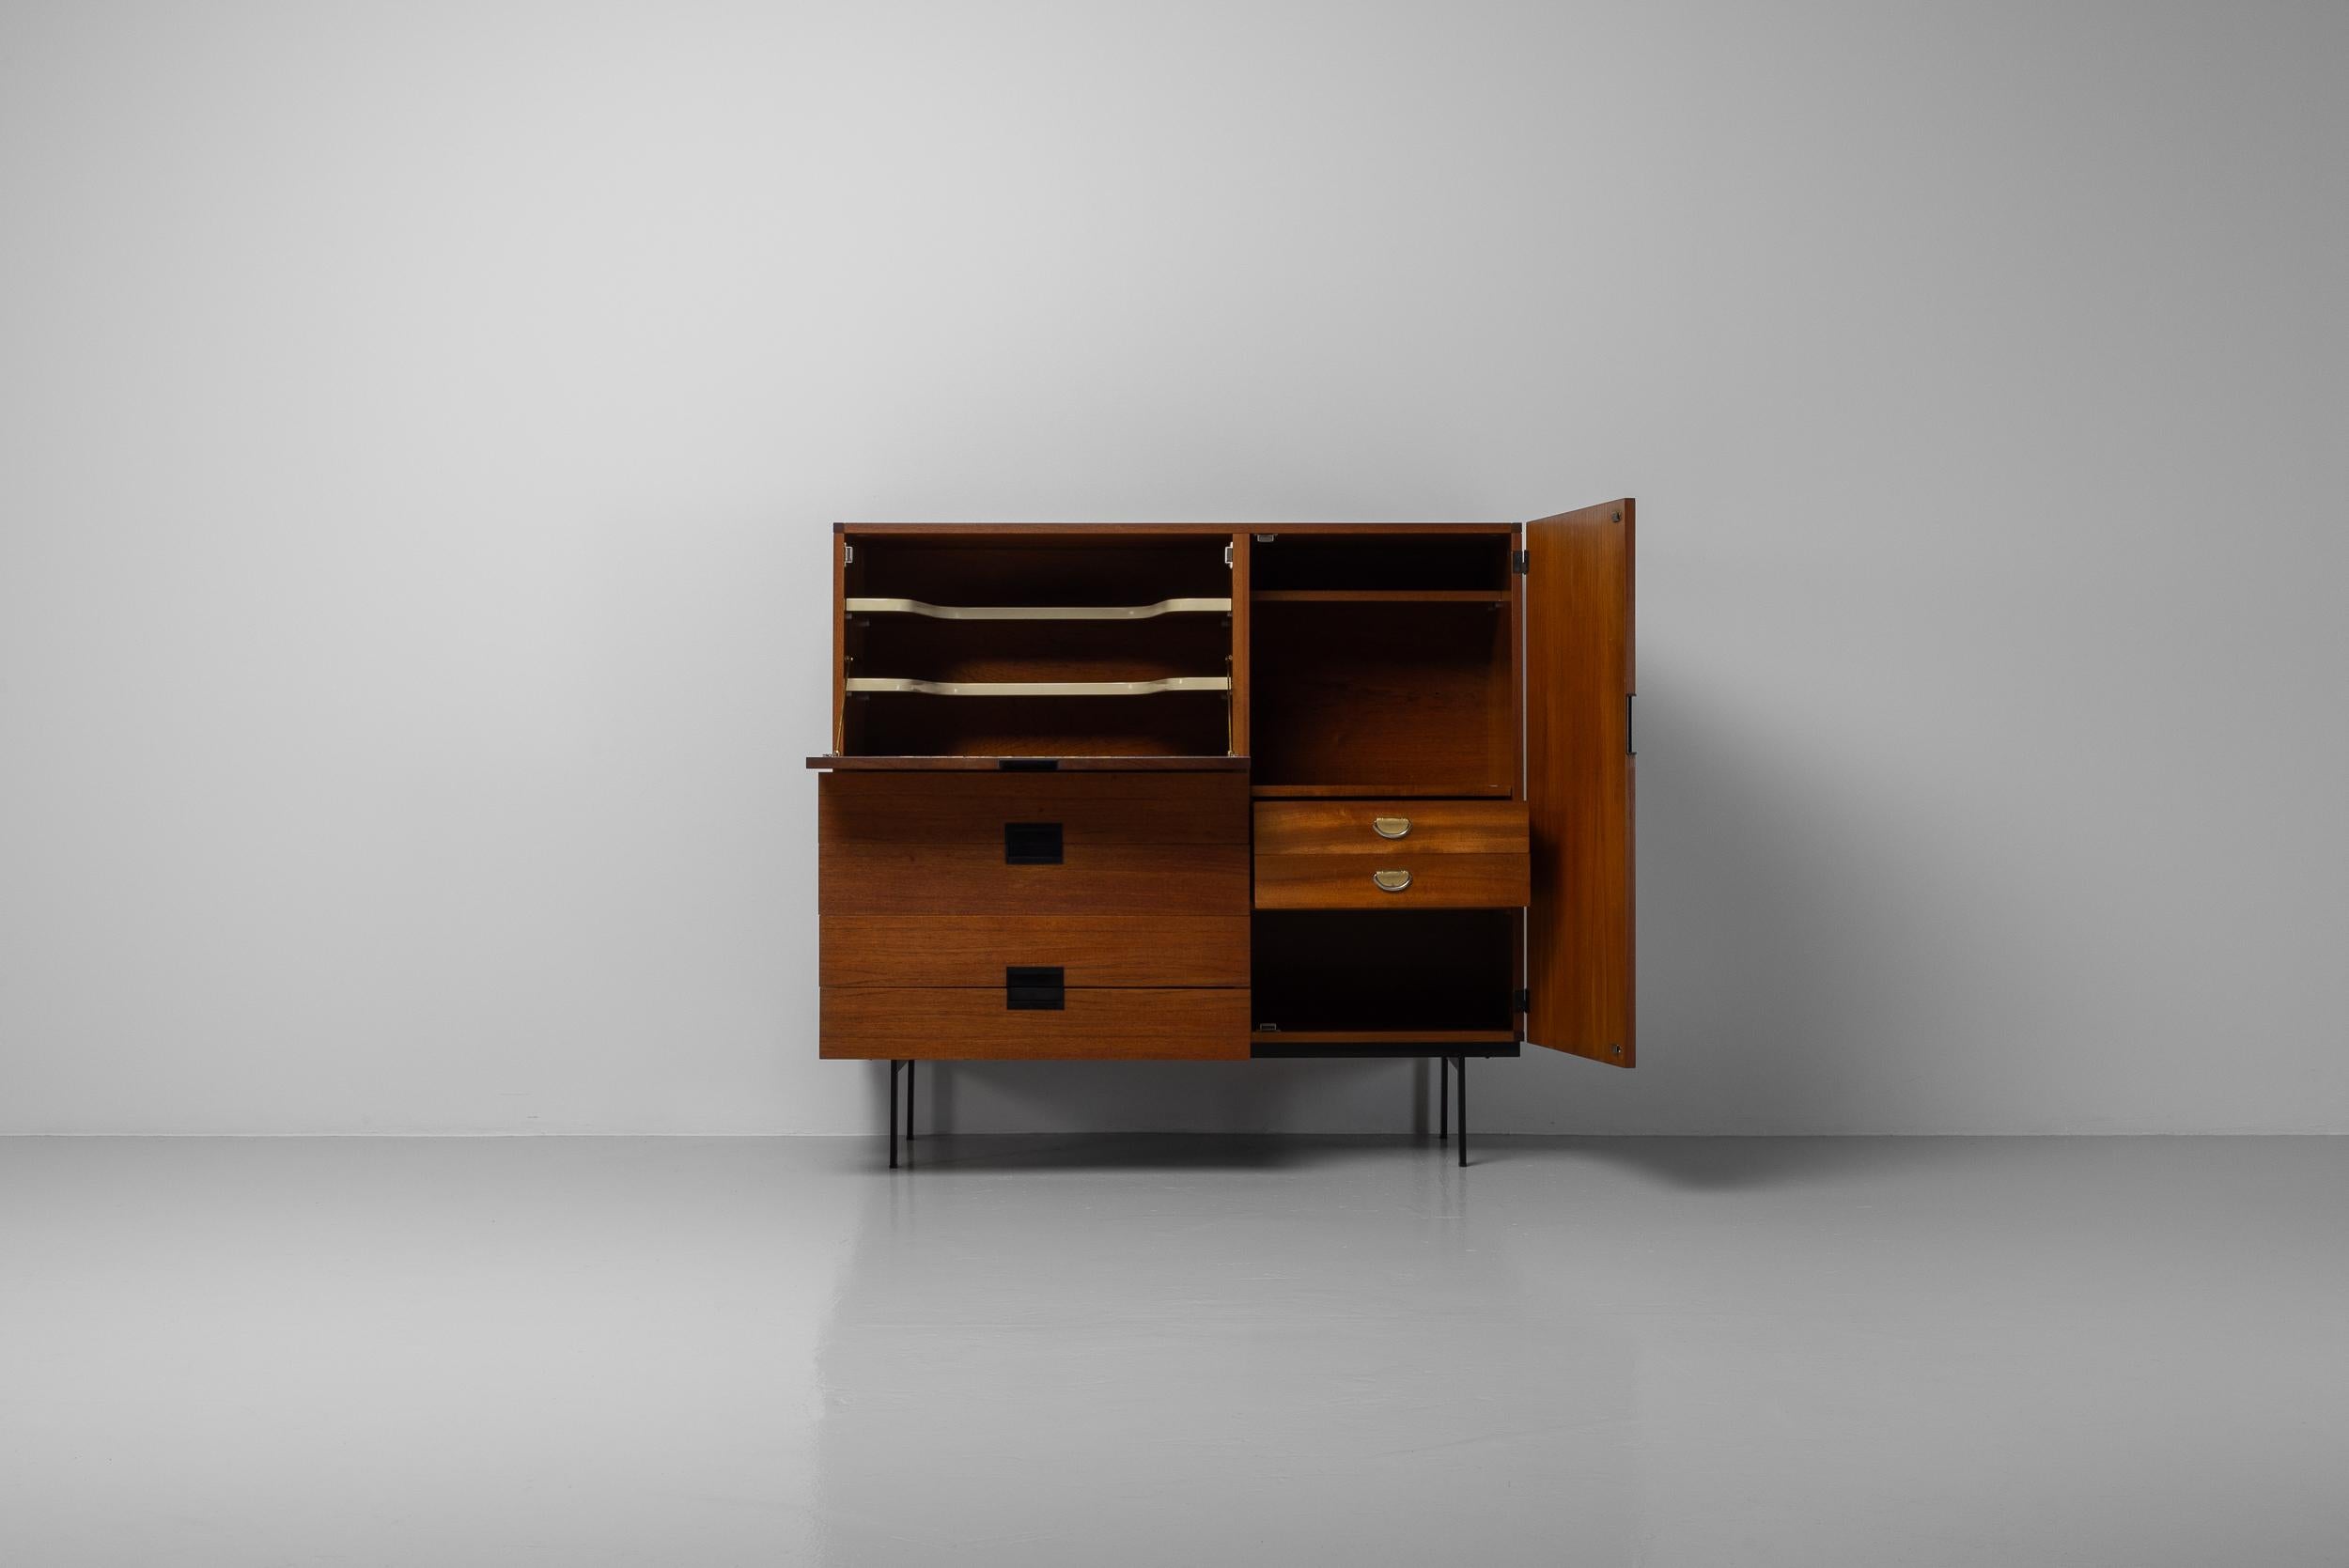 Magnifique armoire CU06 minimaliste conçue par Cees Braakman et fabriquée par Pastoe aux Pays-Bas en 1958. Une pièce magnifique en placage de bois de teck. L'armoire est également dotée d'un cadre en métal peint en noir. Les poignées des portes